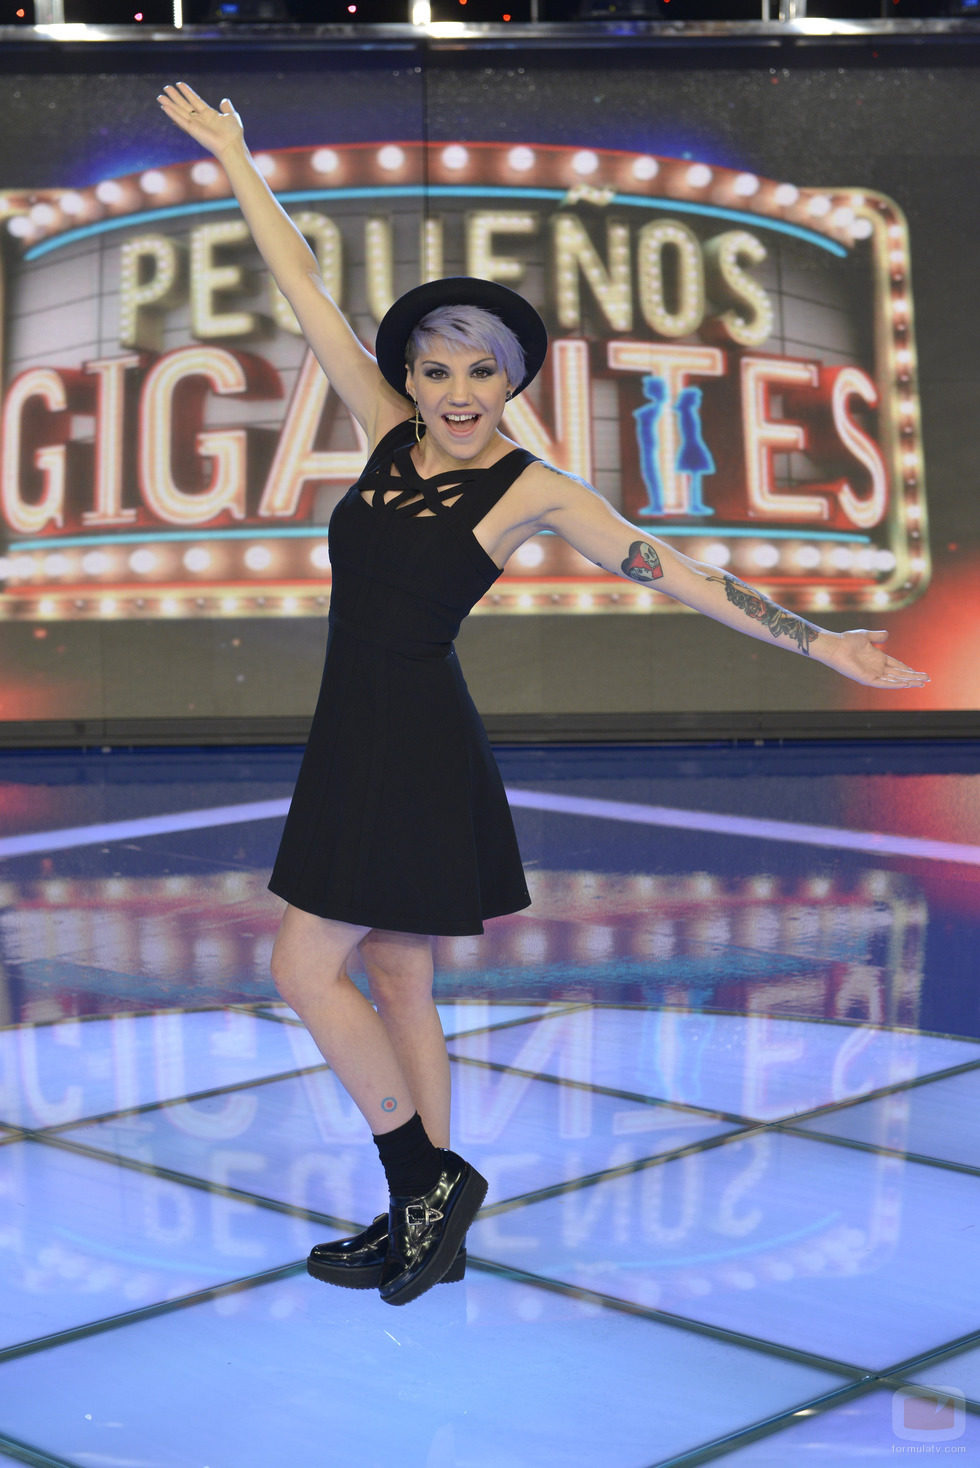 La cantante Angy debuta como jurado en 'Pequeños gigantes'